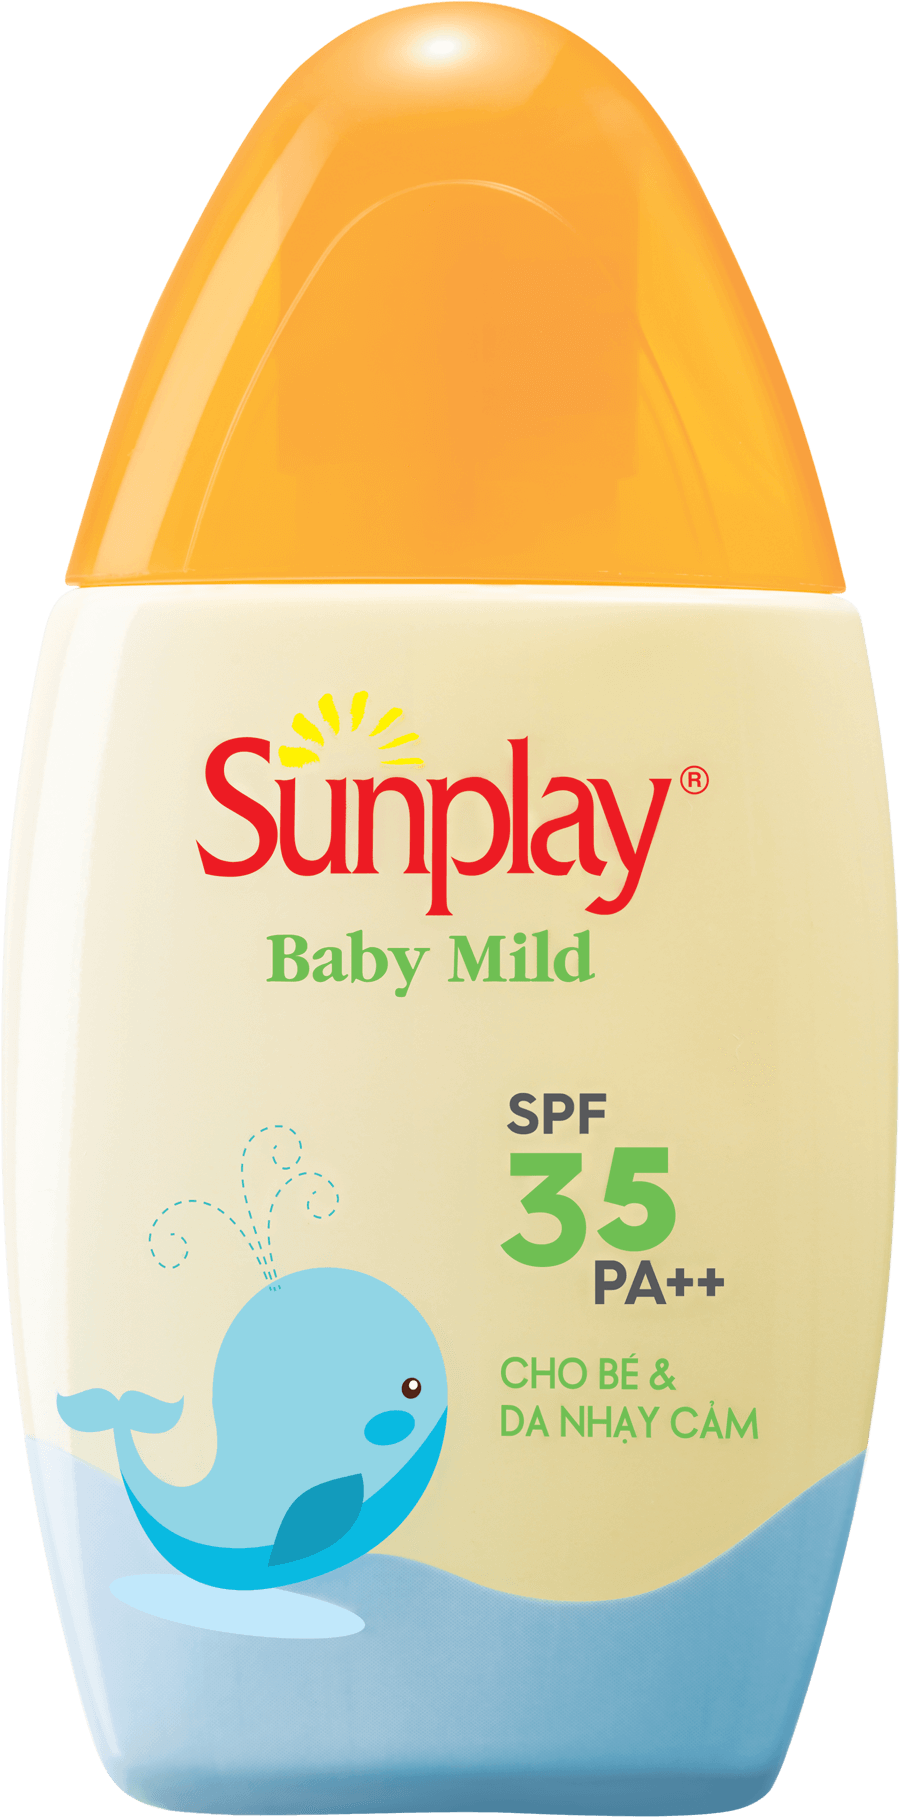 Sữa chống nắng cho bé và da nhạy cảm SPF35, PA++